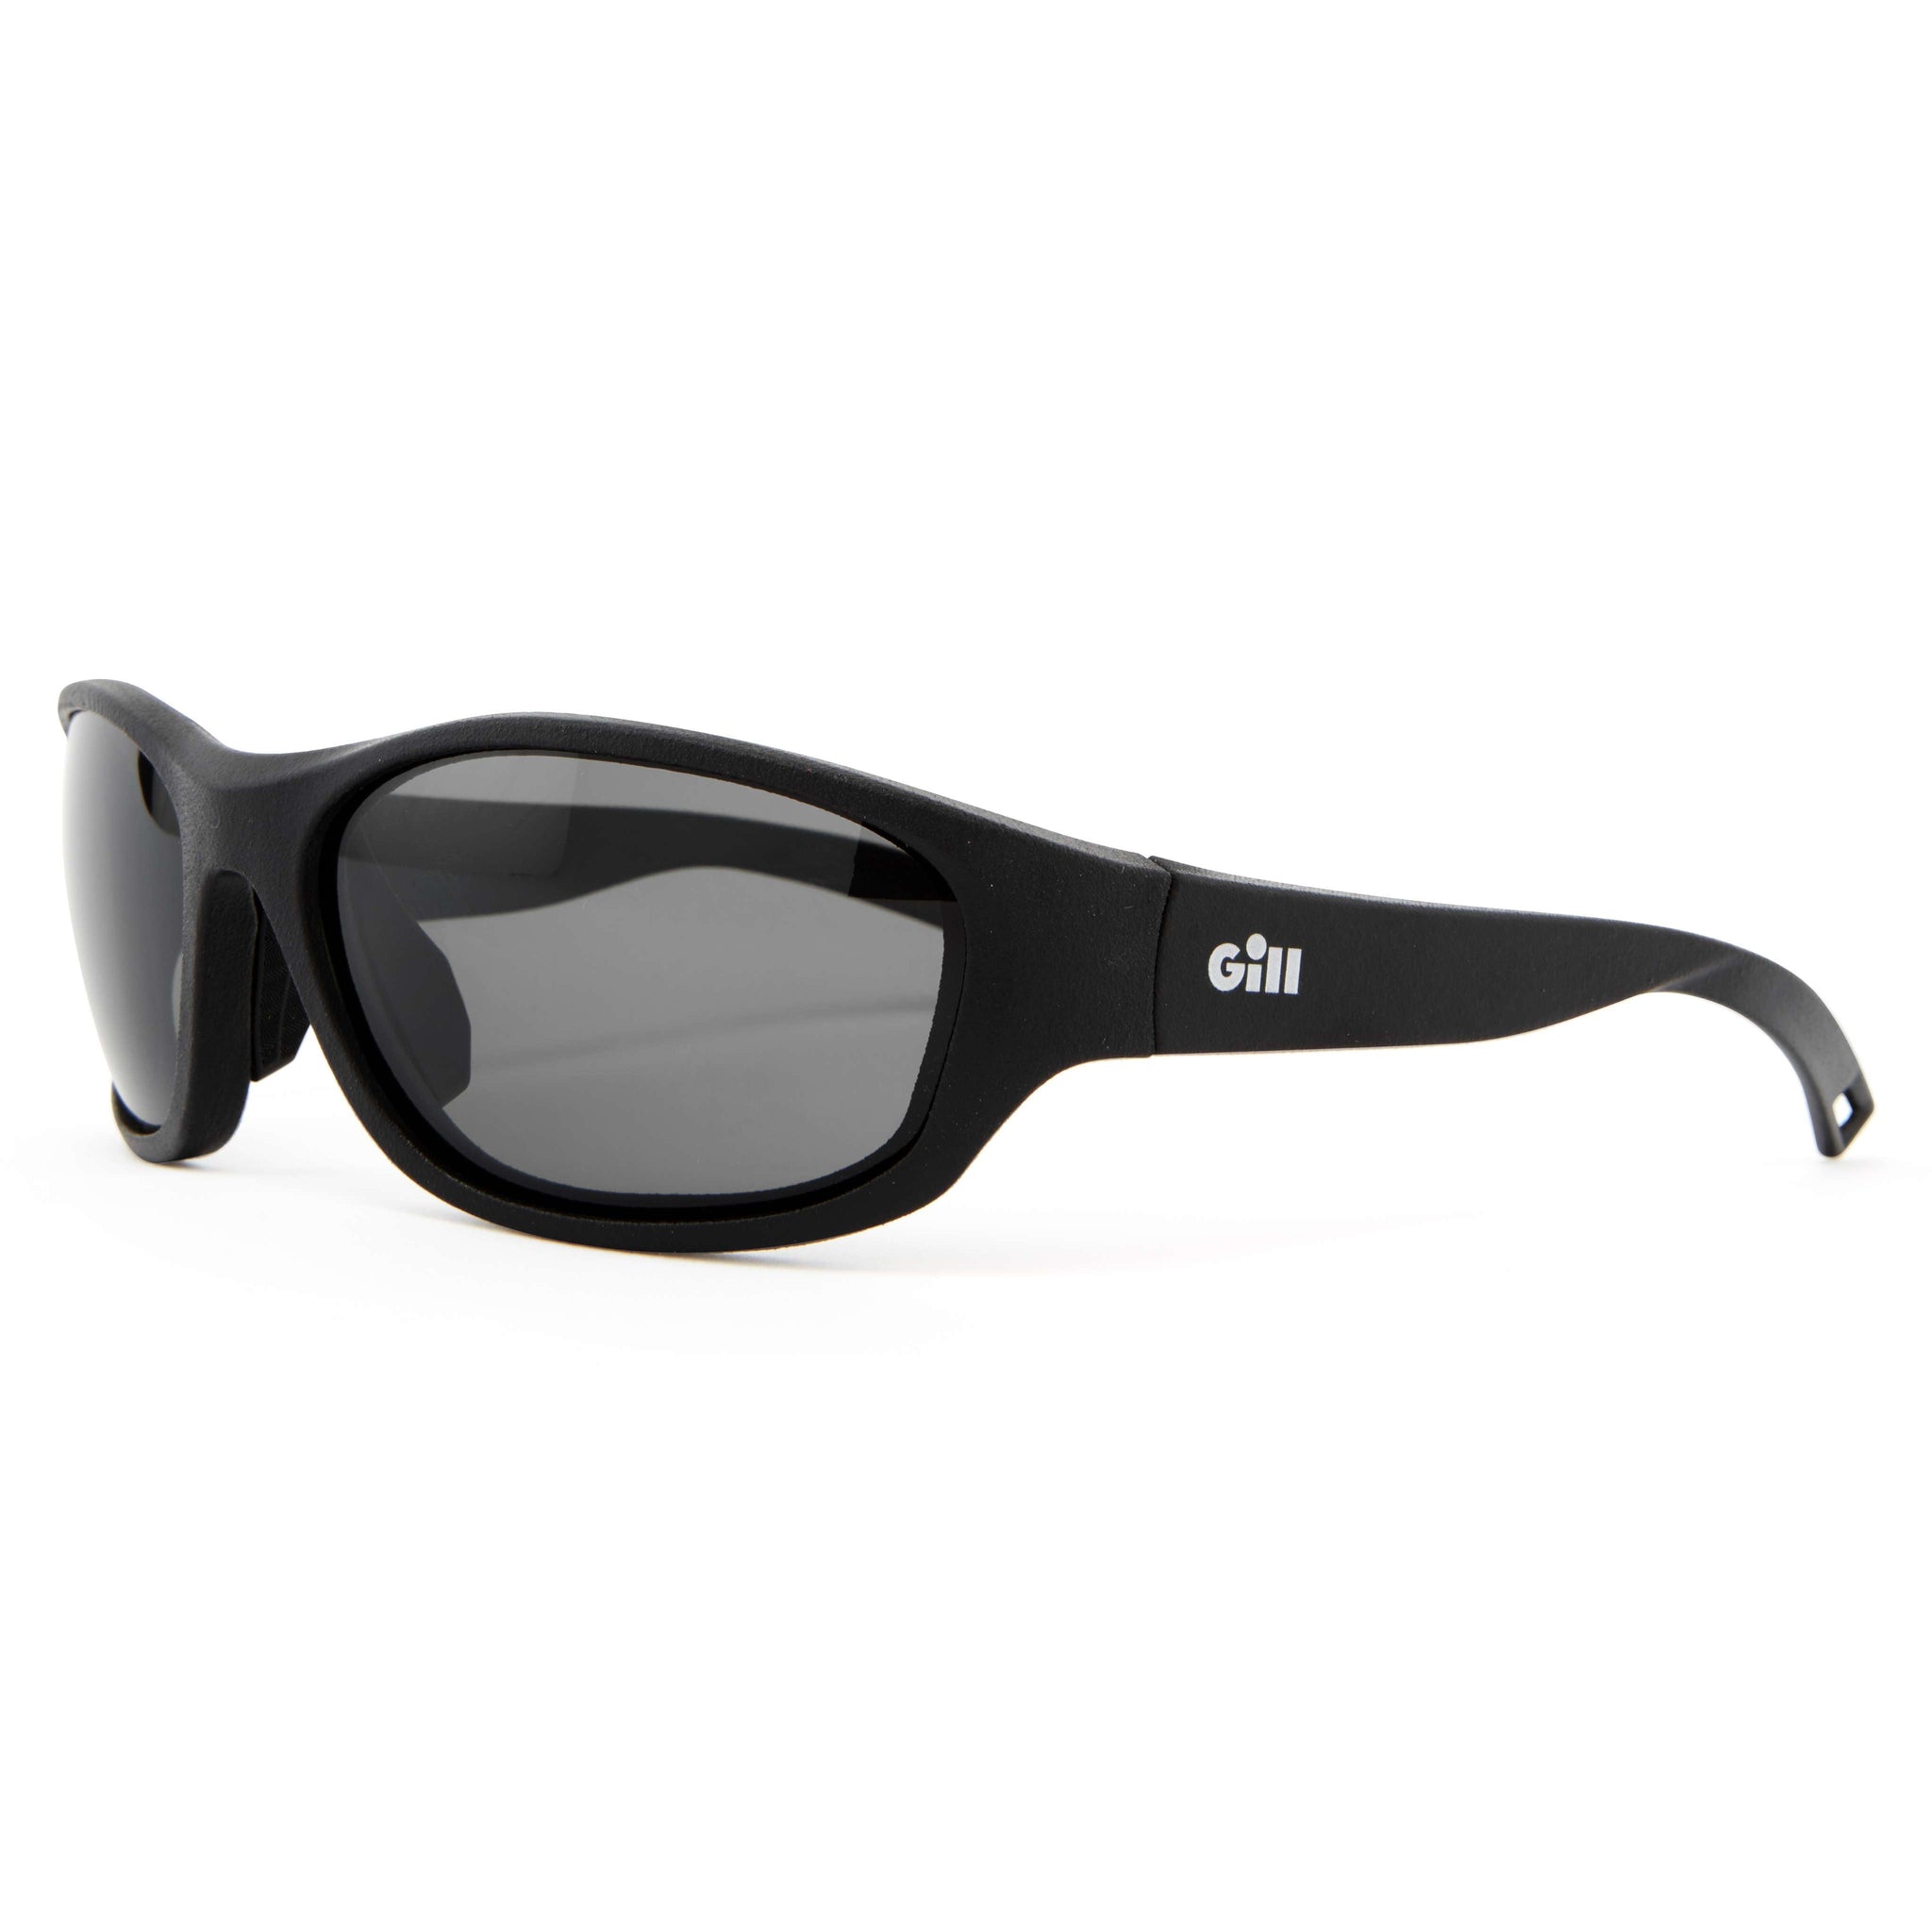 Gill - Classic Sunglasses